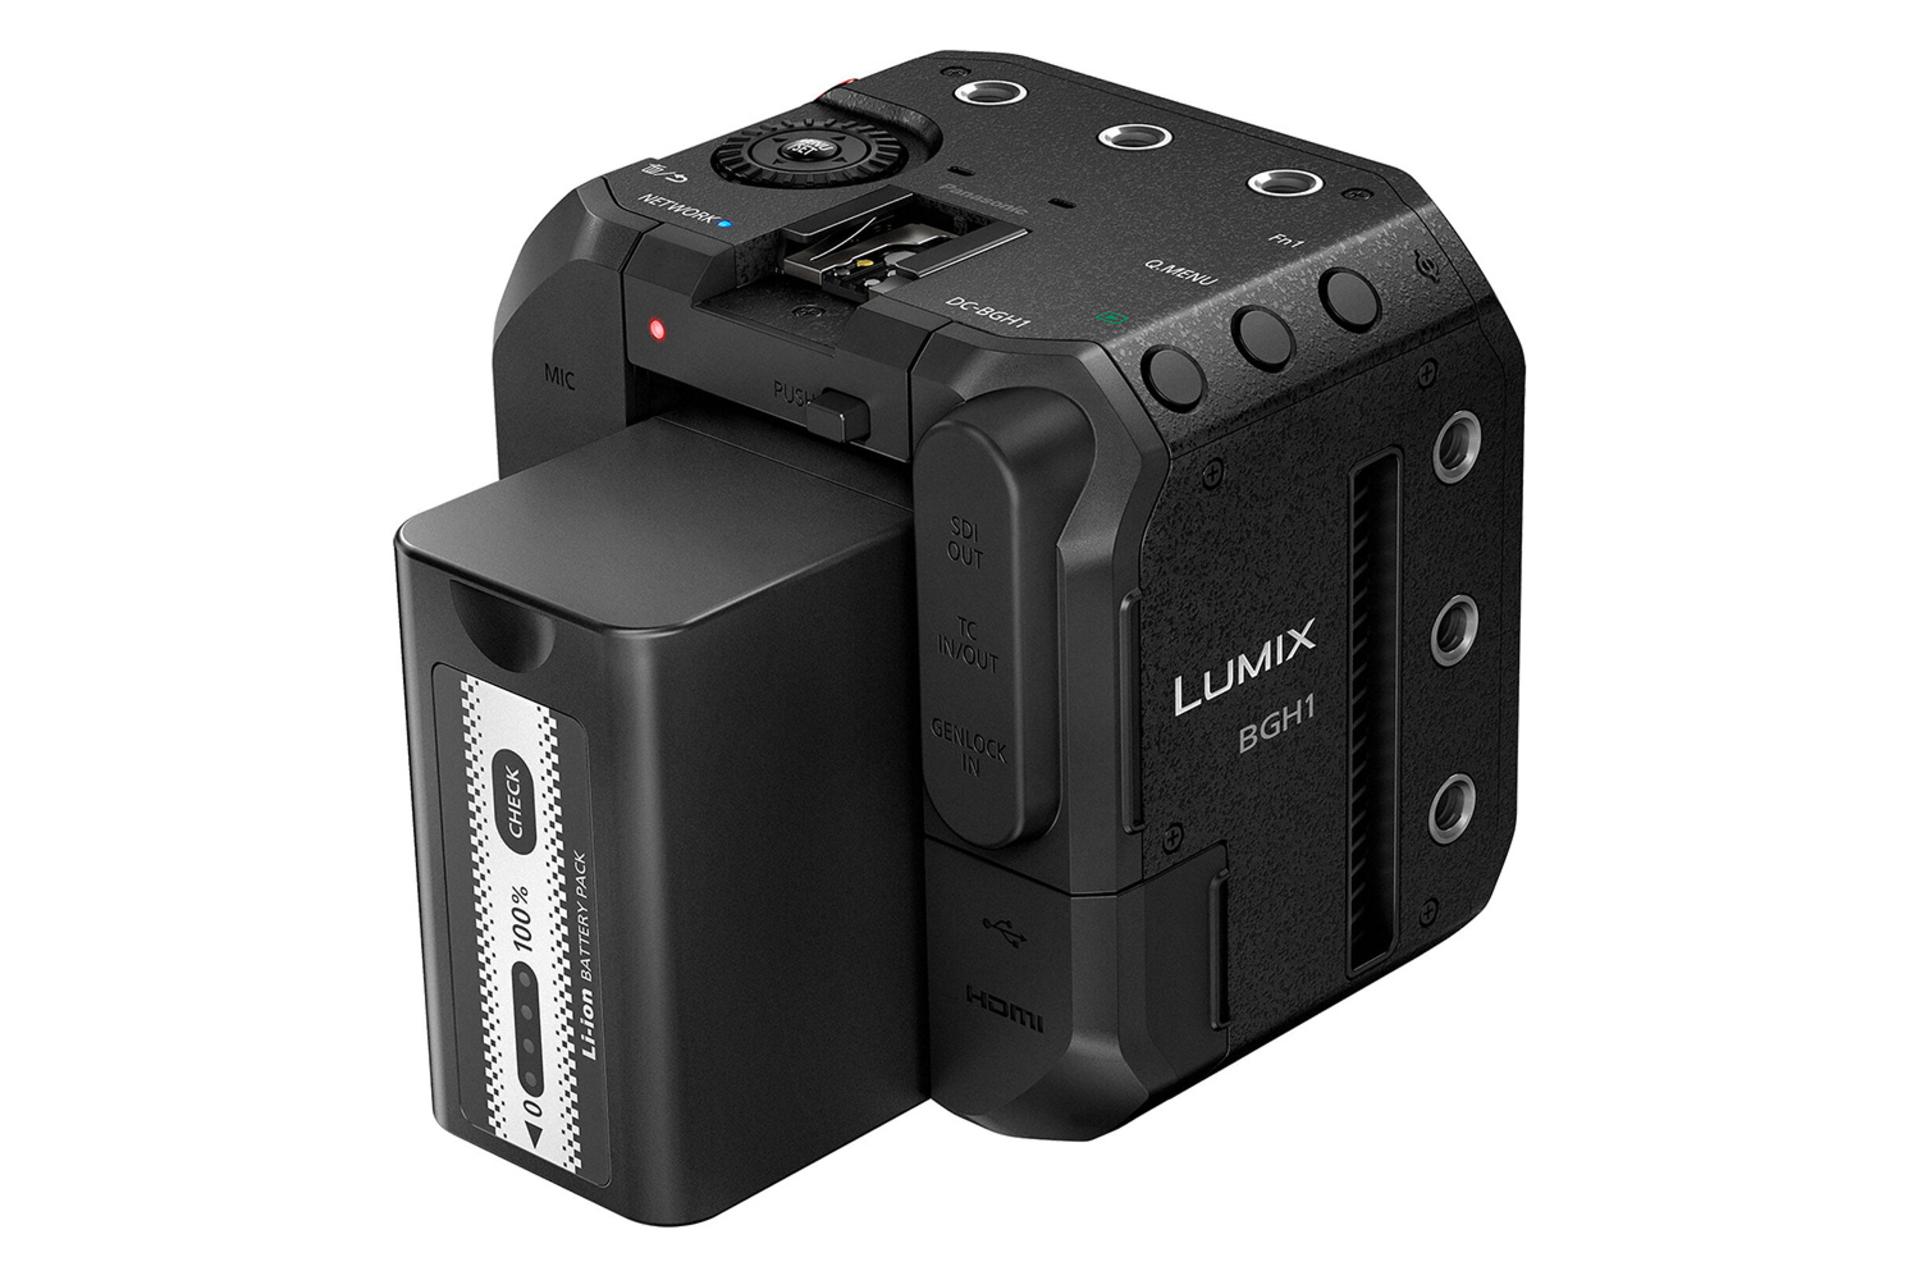 دوربین عکاسی پاناسونیک لومیکس DC BGH1 از نمای پشت و نمایش باتری